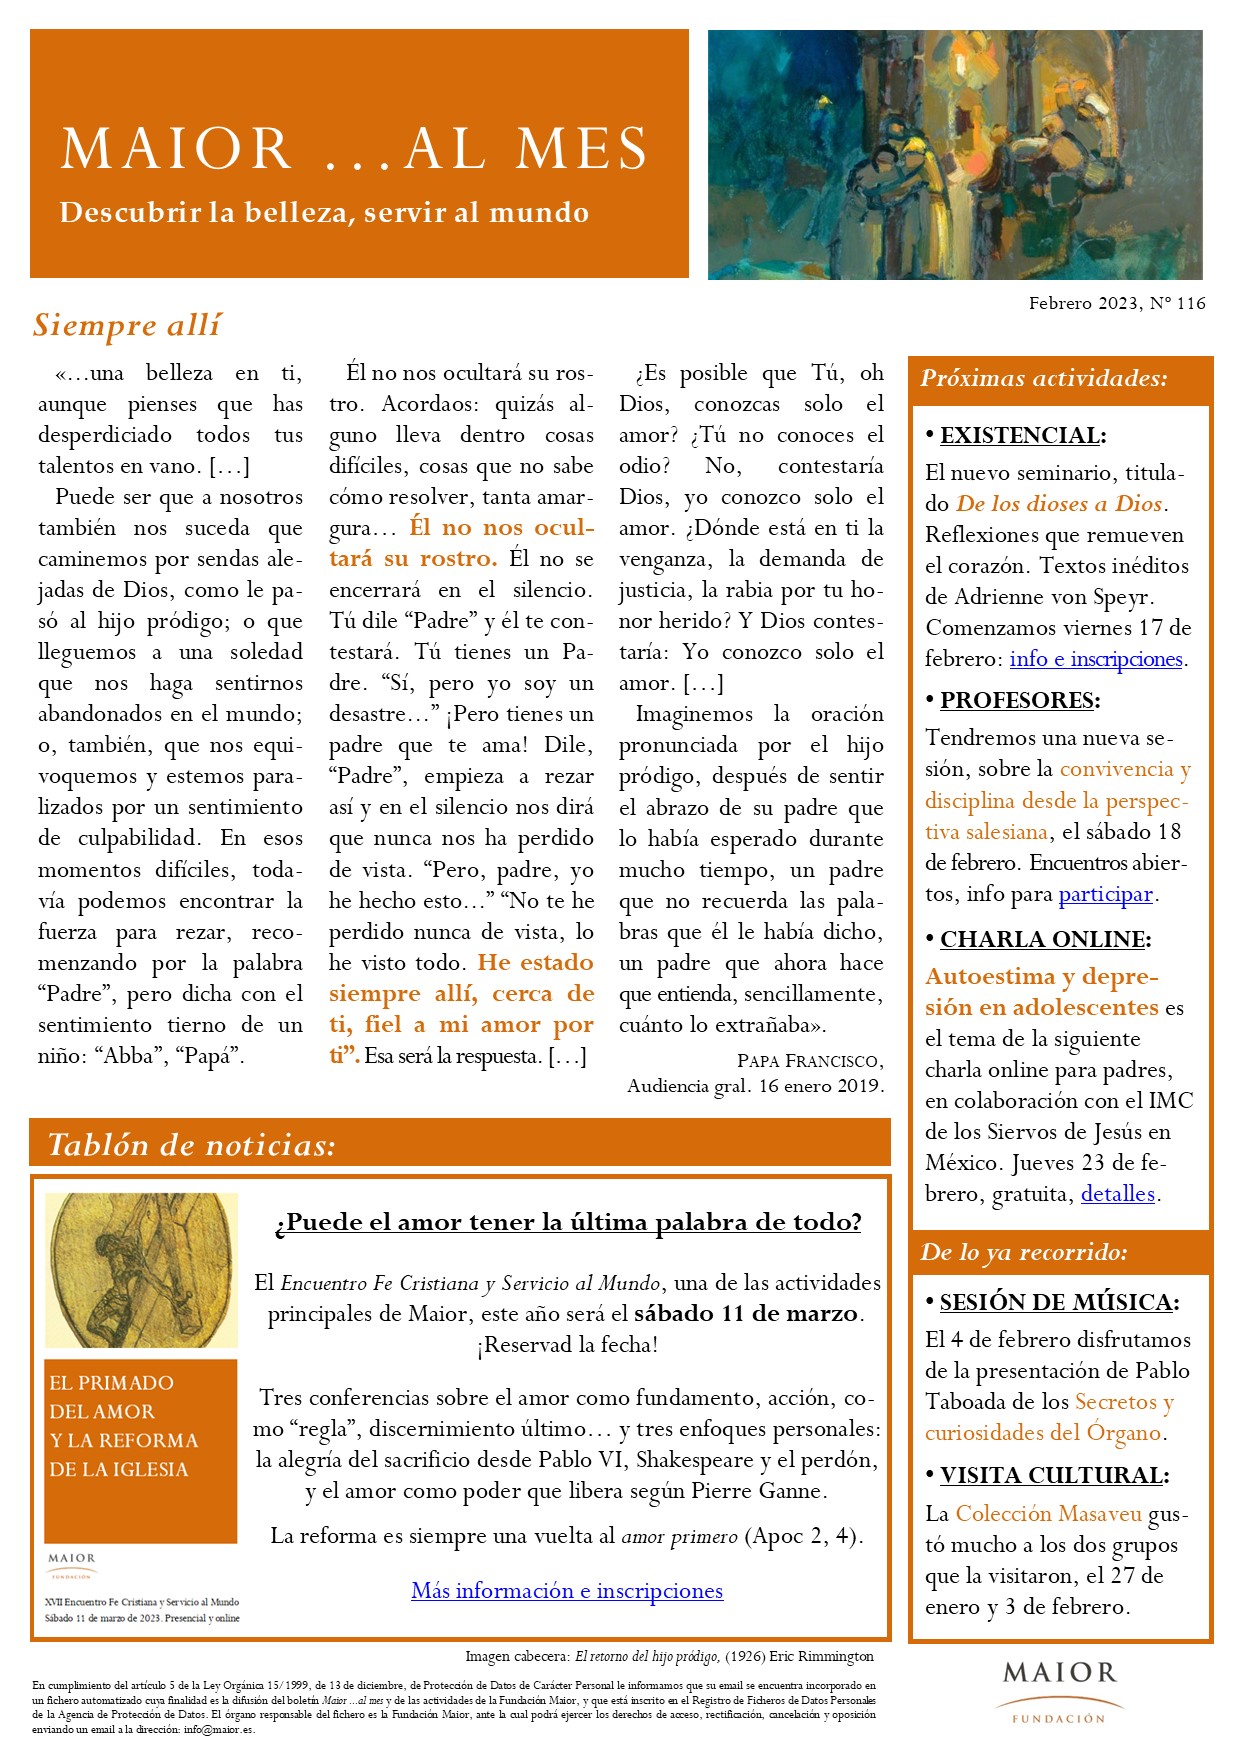 Boletín mensual de noticias y actividades de la Fundación Maior. Edición de febrero 2023